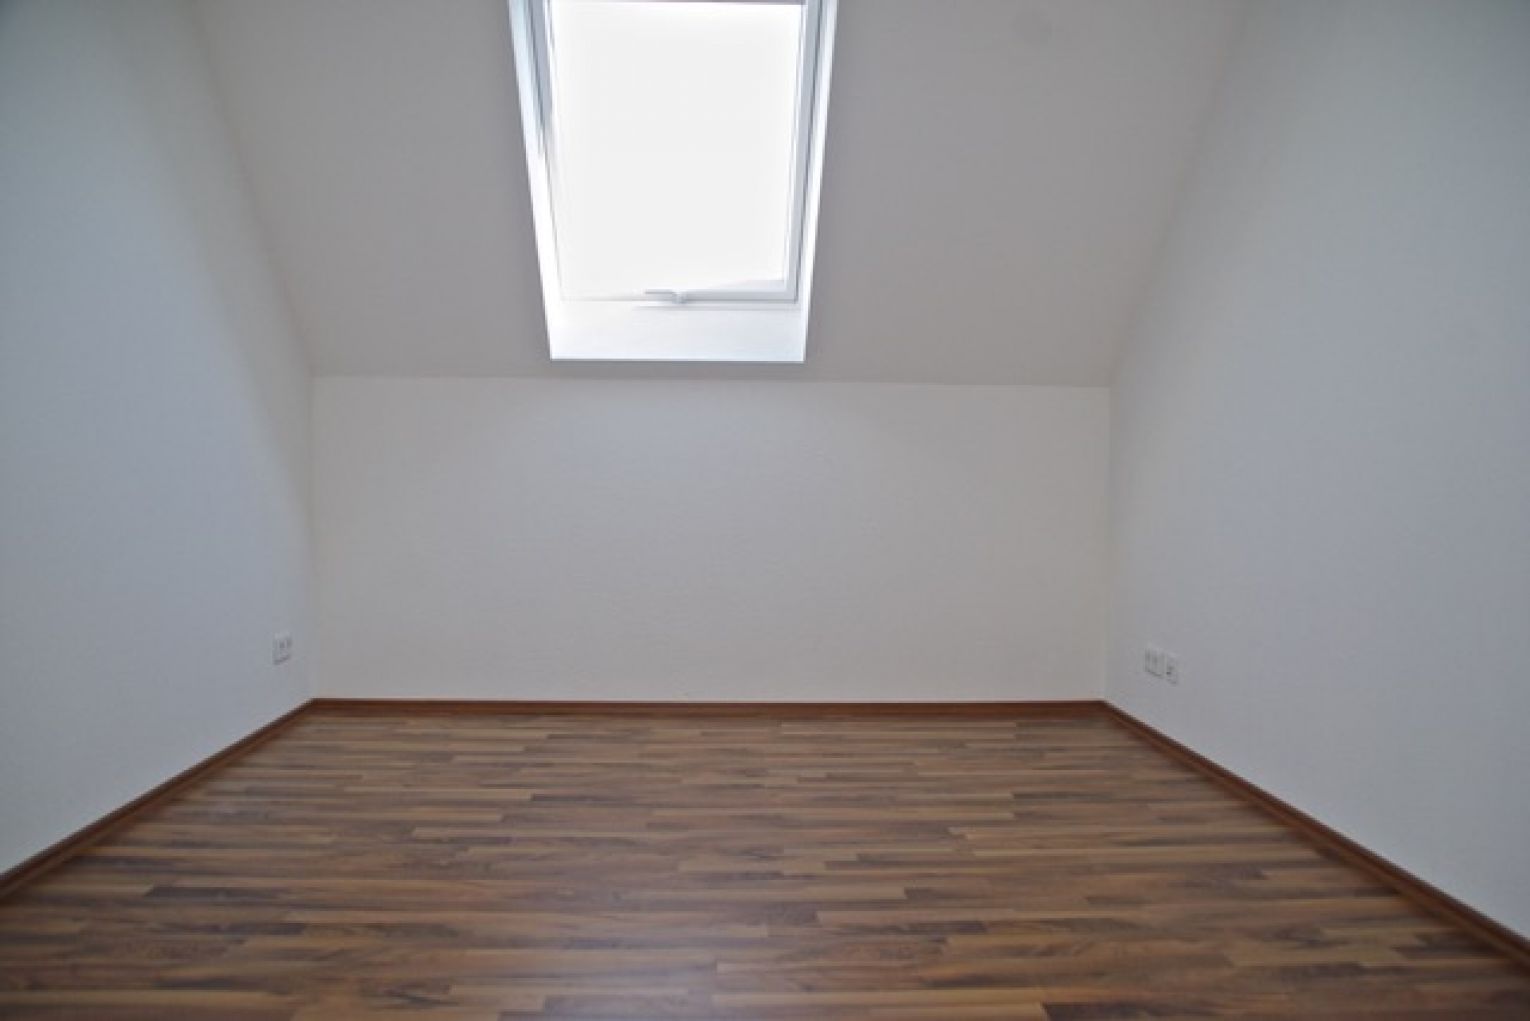 3-Zimmer • Dachgeschoss • Fussbodenheizung • Laminat • Stellplatz • Kaßberg • gleich anschauen?